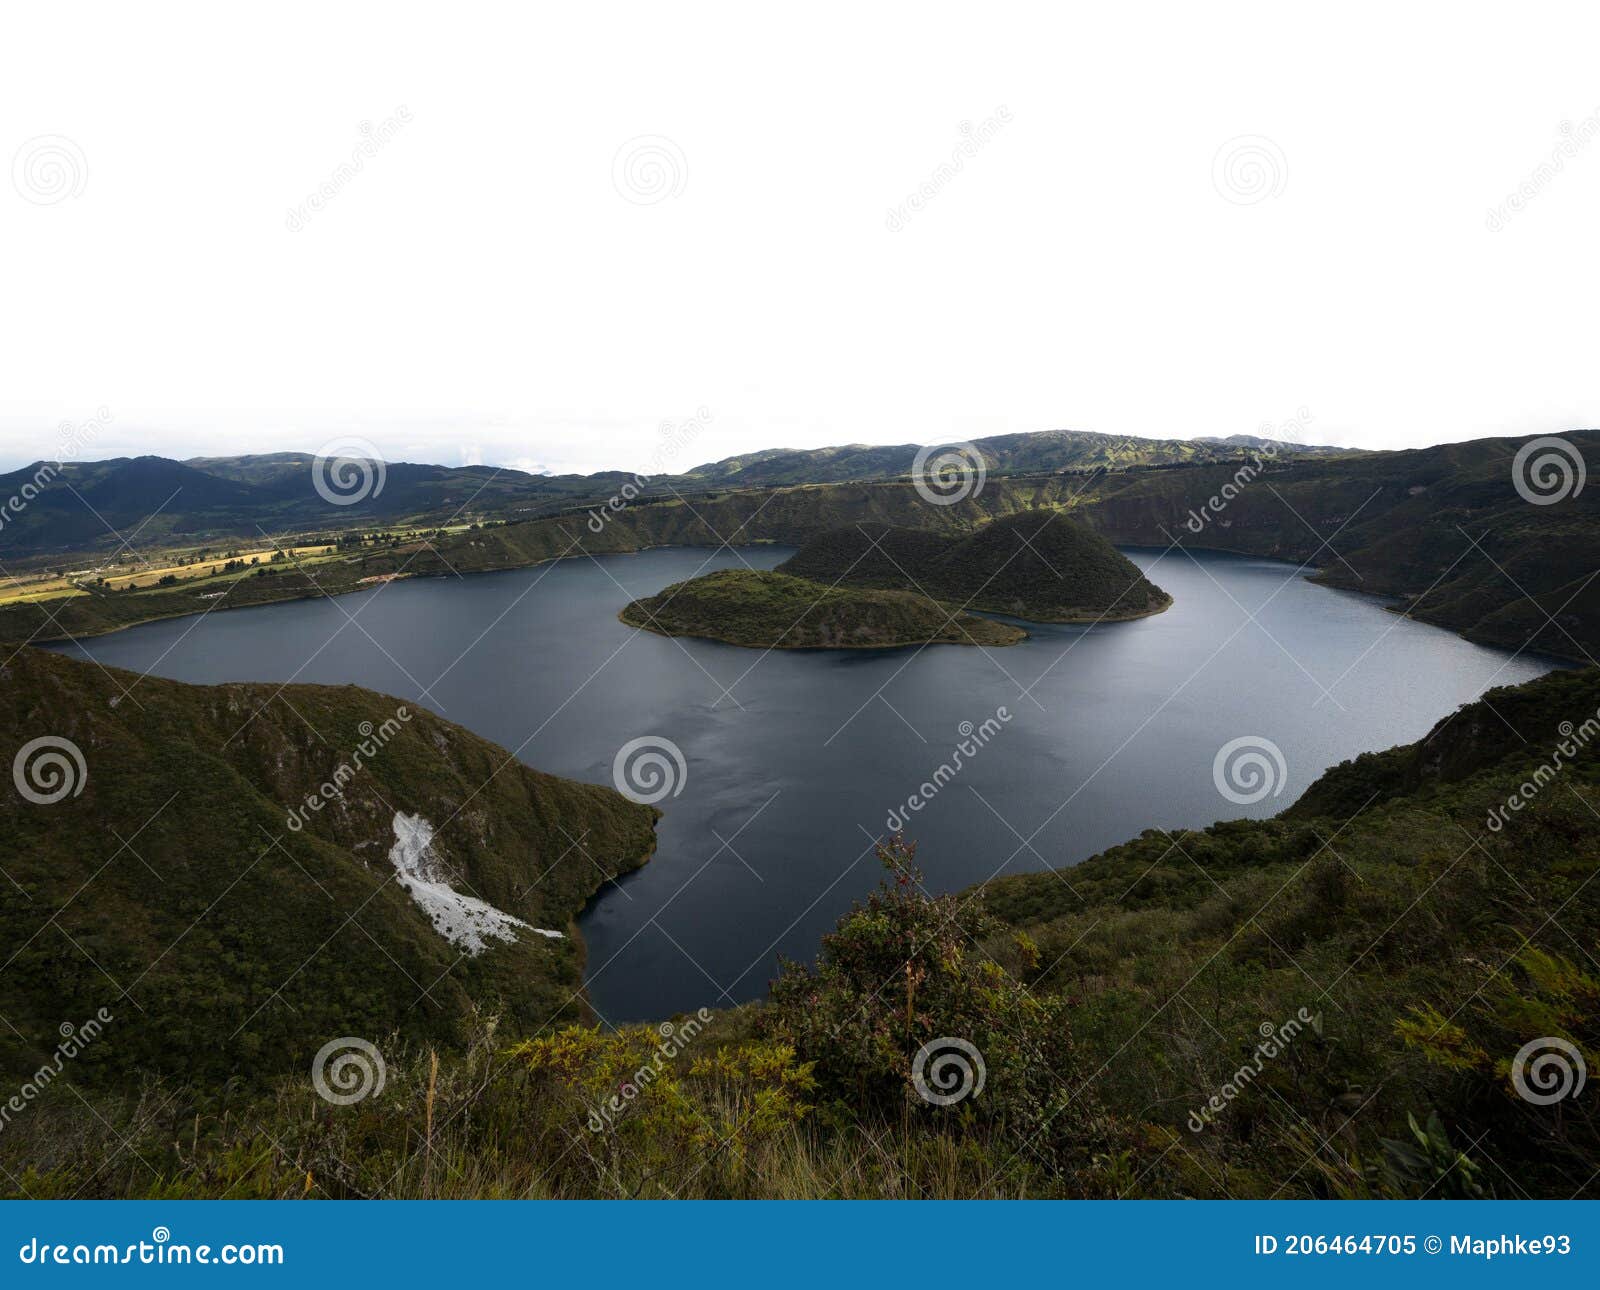 wide angle panorama of cuicocha caldera crater lake cotacachi volcano otavalo andes mountains imbabura ecuador